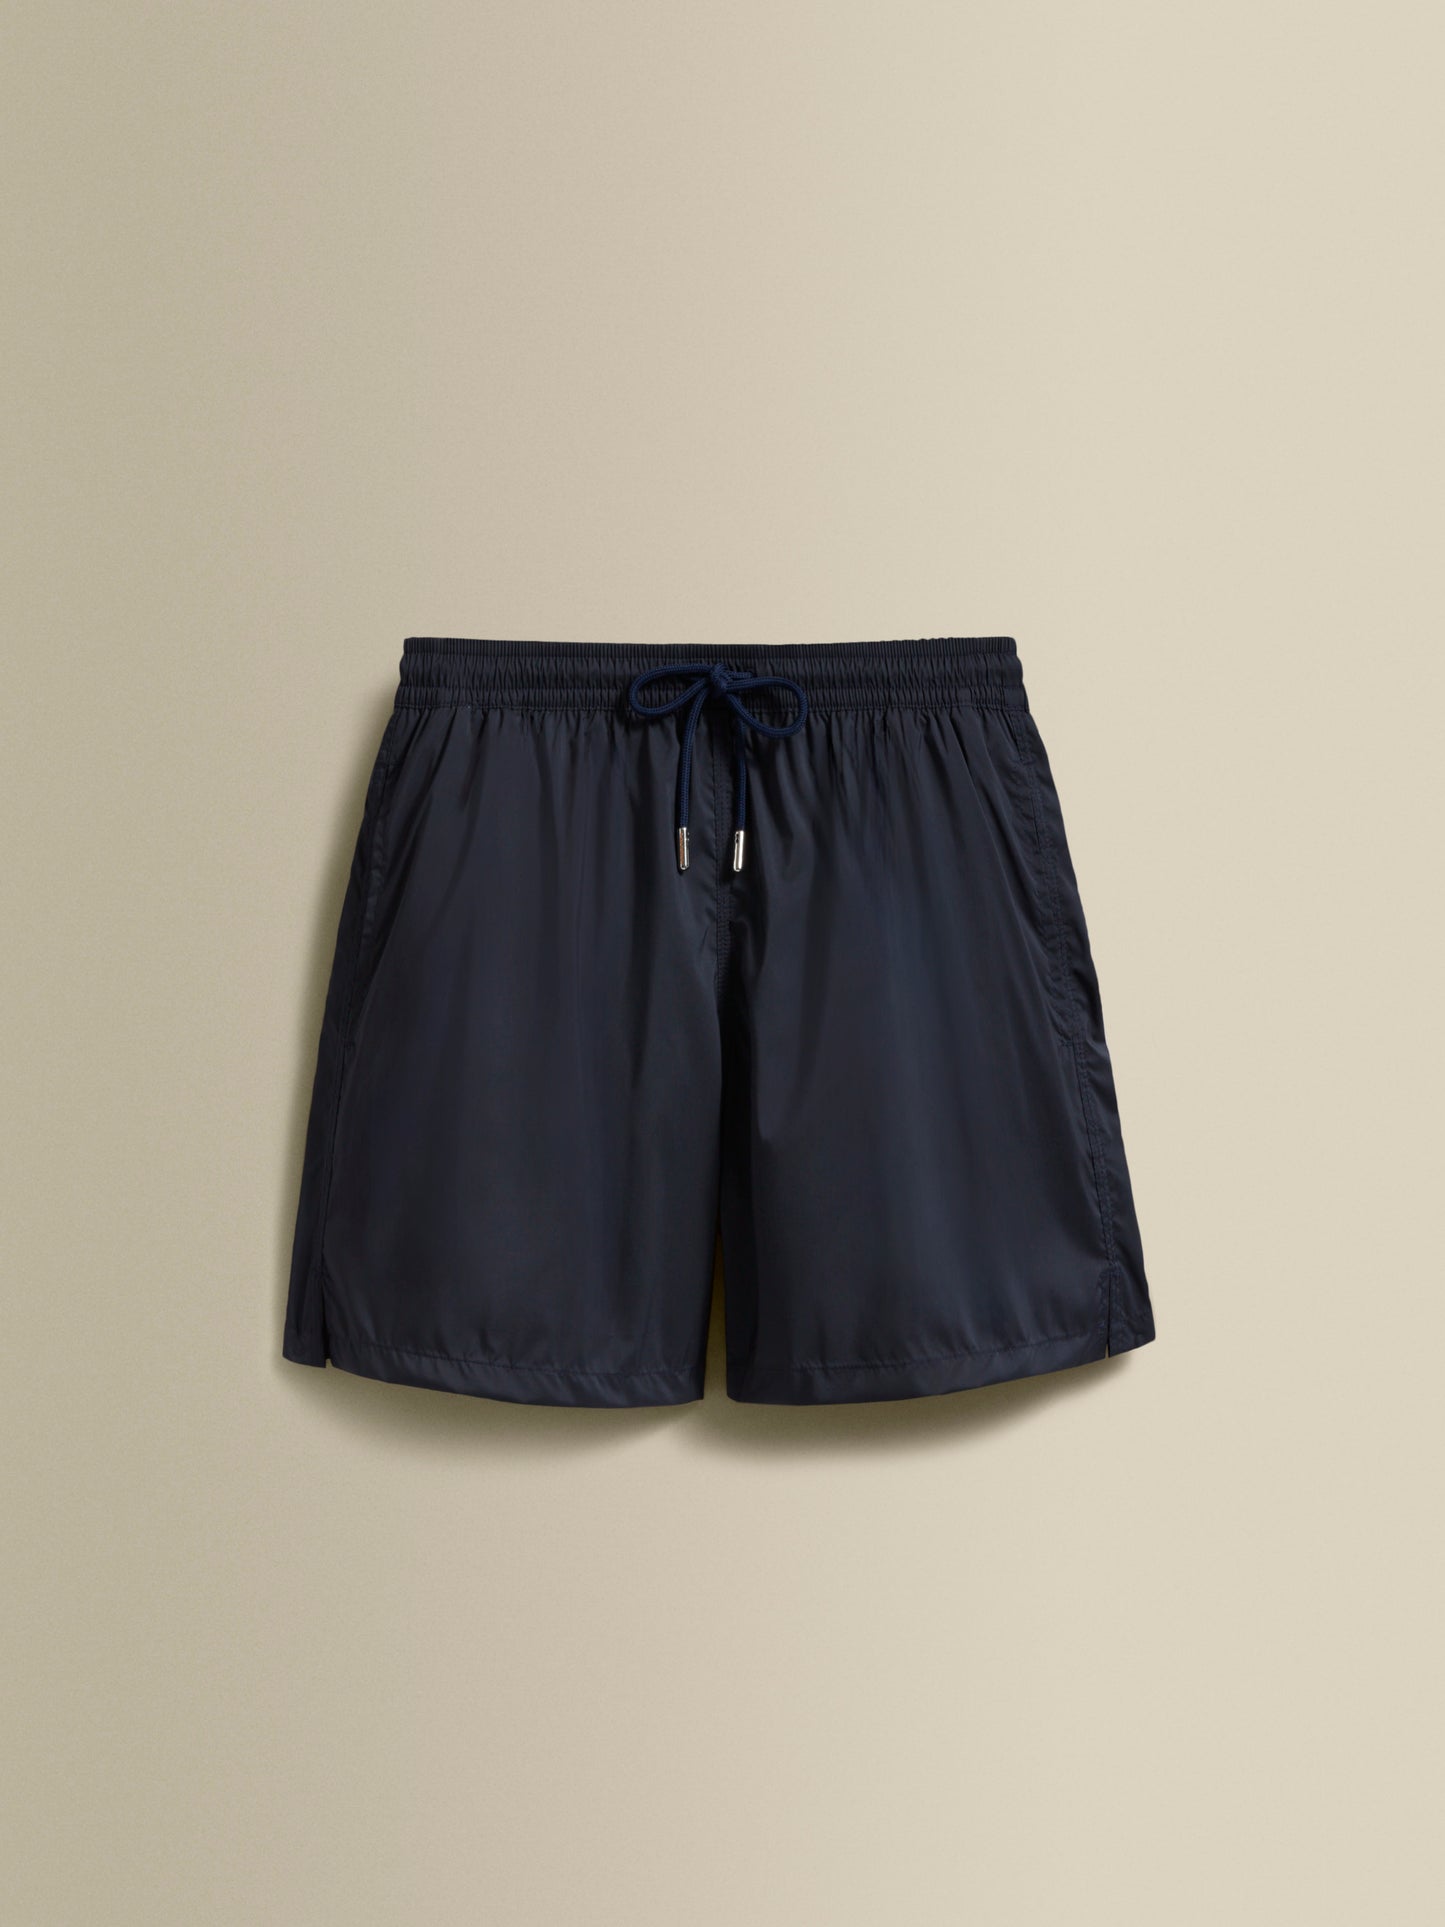 Nylon Mid Length Swim Shorts Navy Product Image